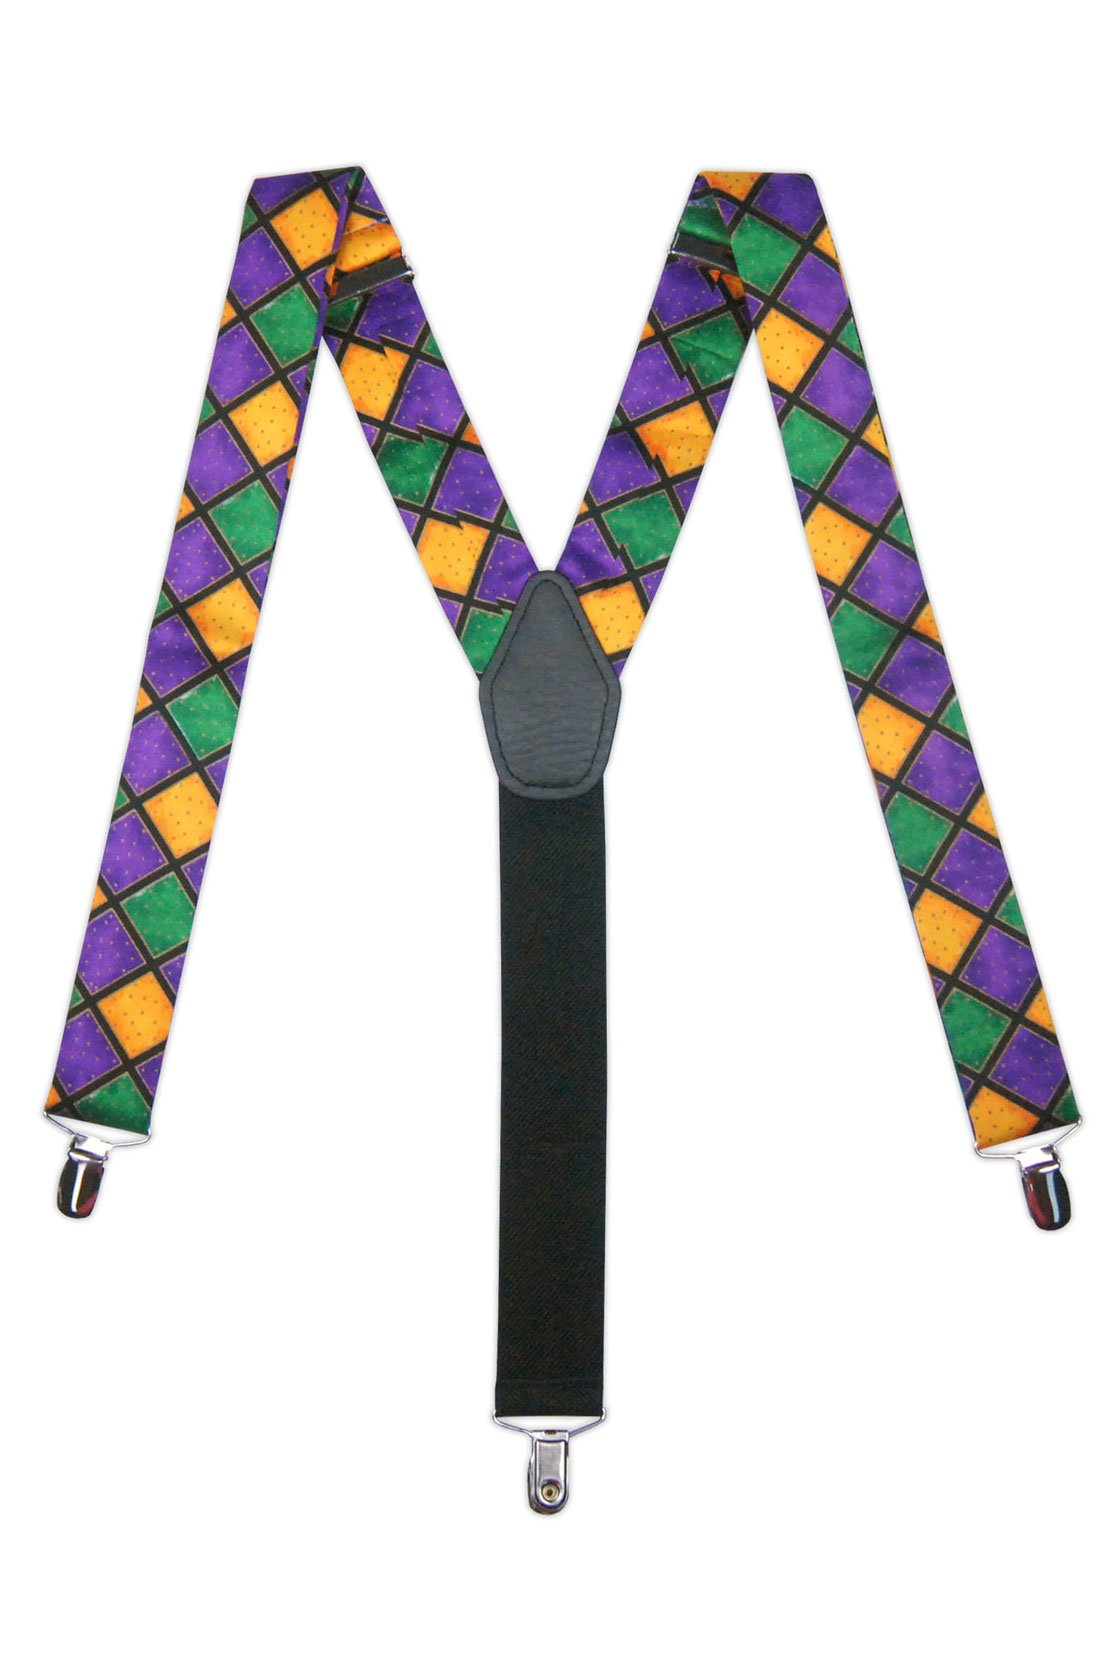 Tux Park "Mardi Gras Harlequin" Suspenders